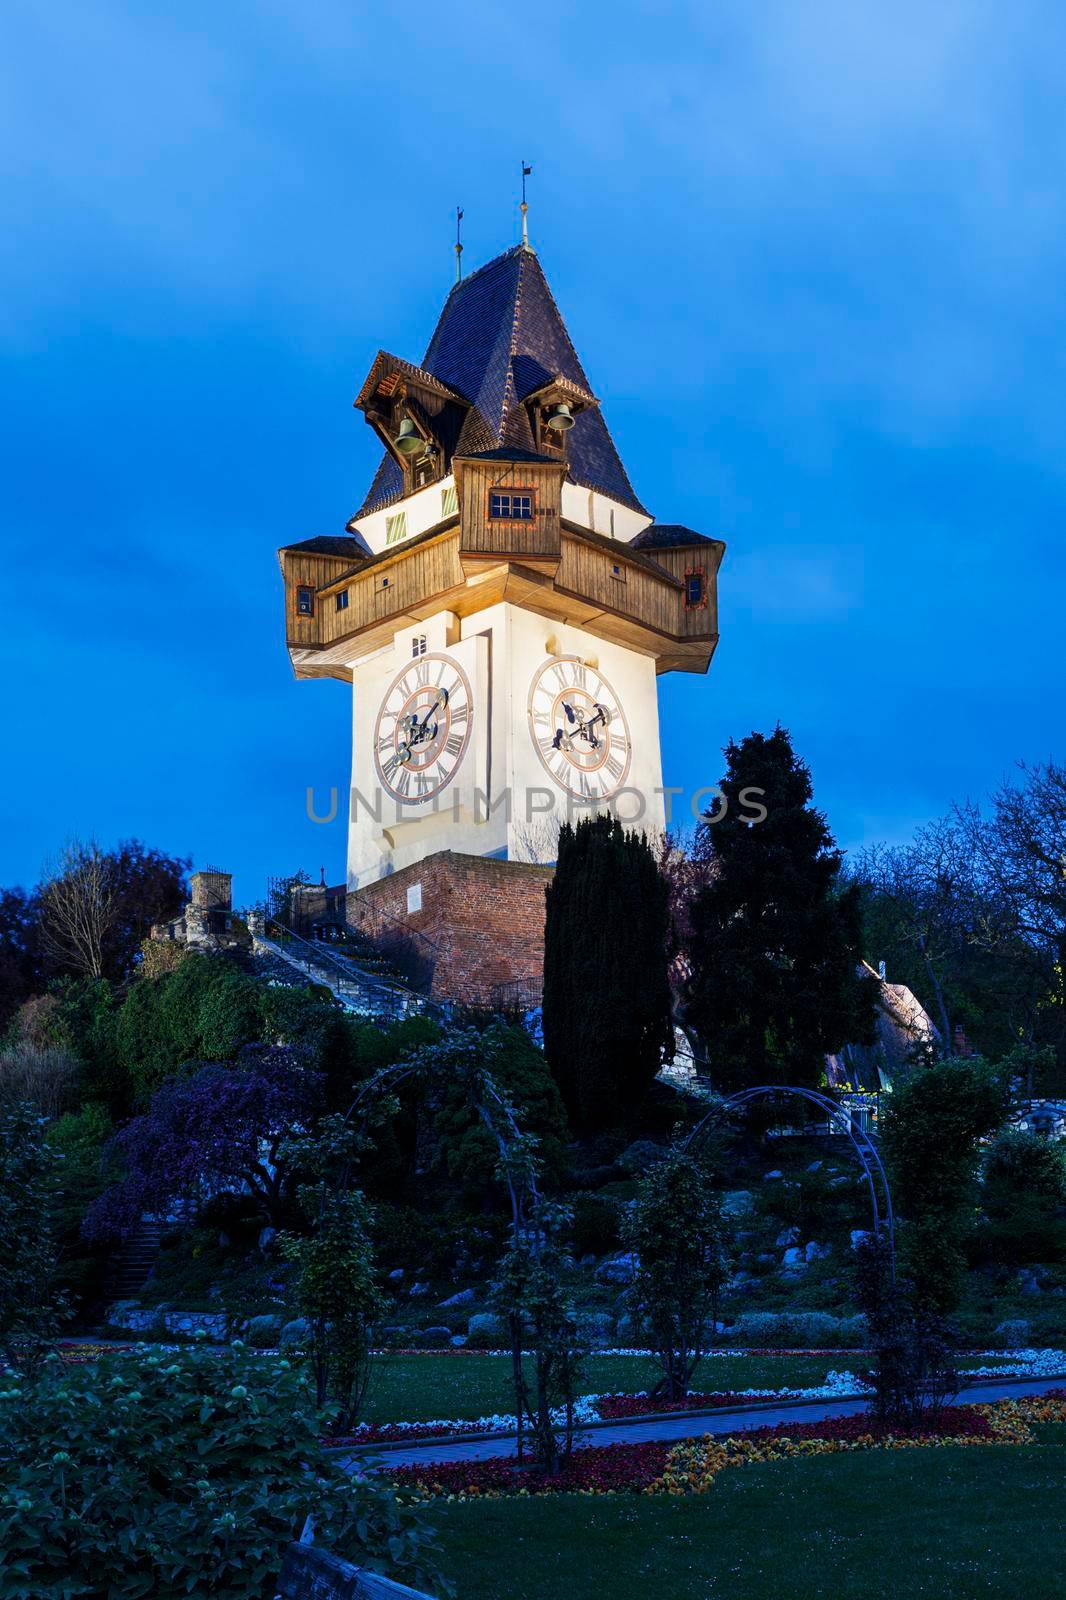 The Uhrturm in Graz by benkrut